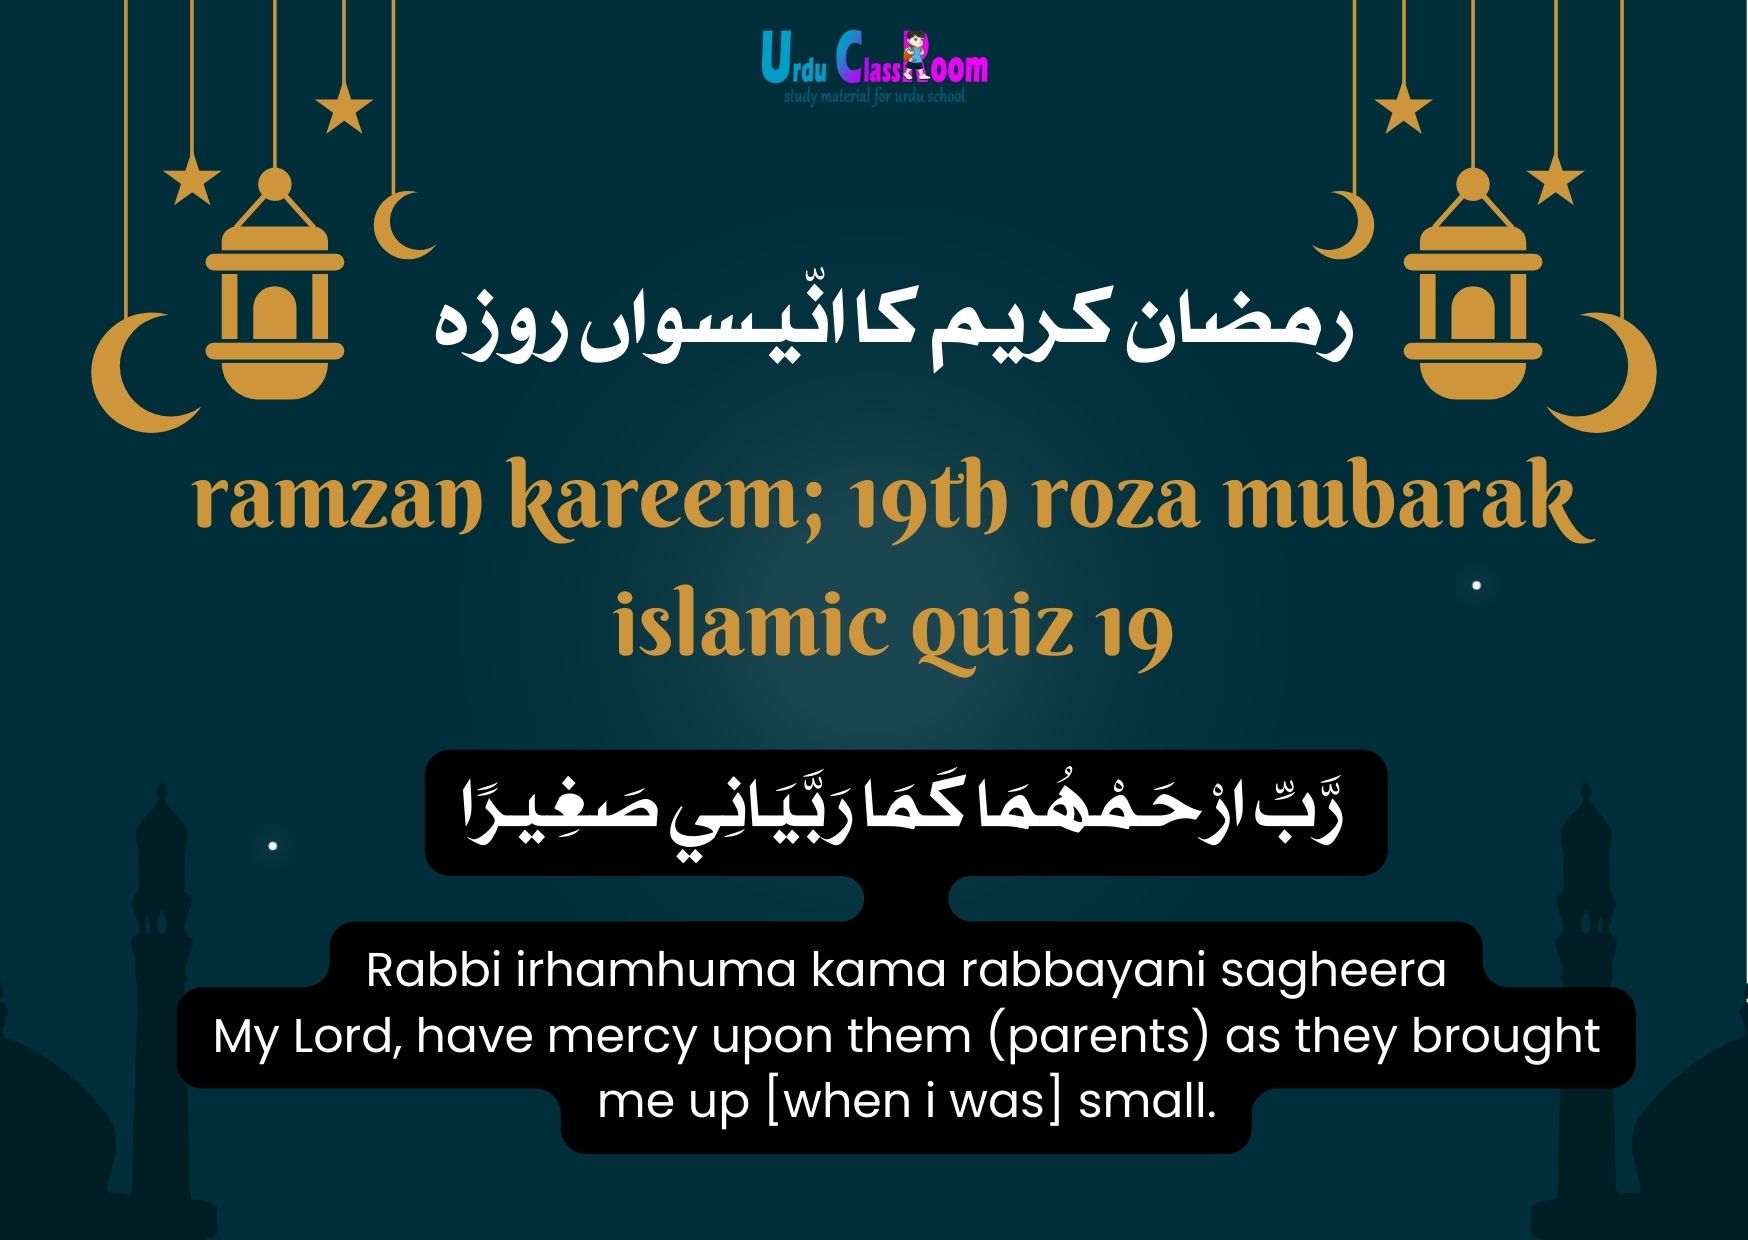 ramzan kareem; 19th roza mubarak islamic quiz 19